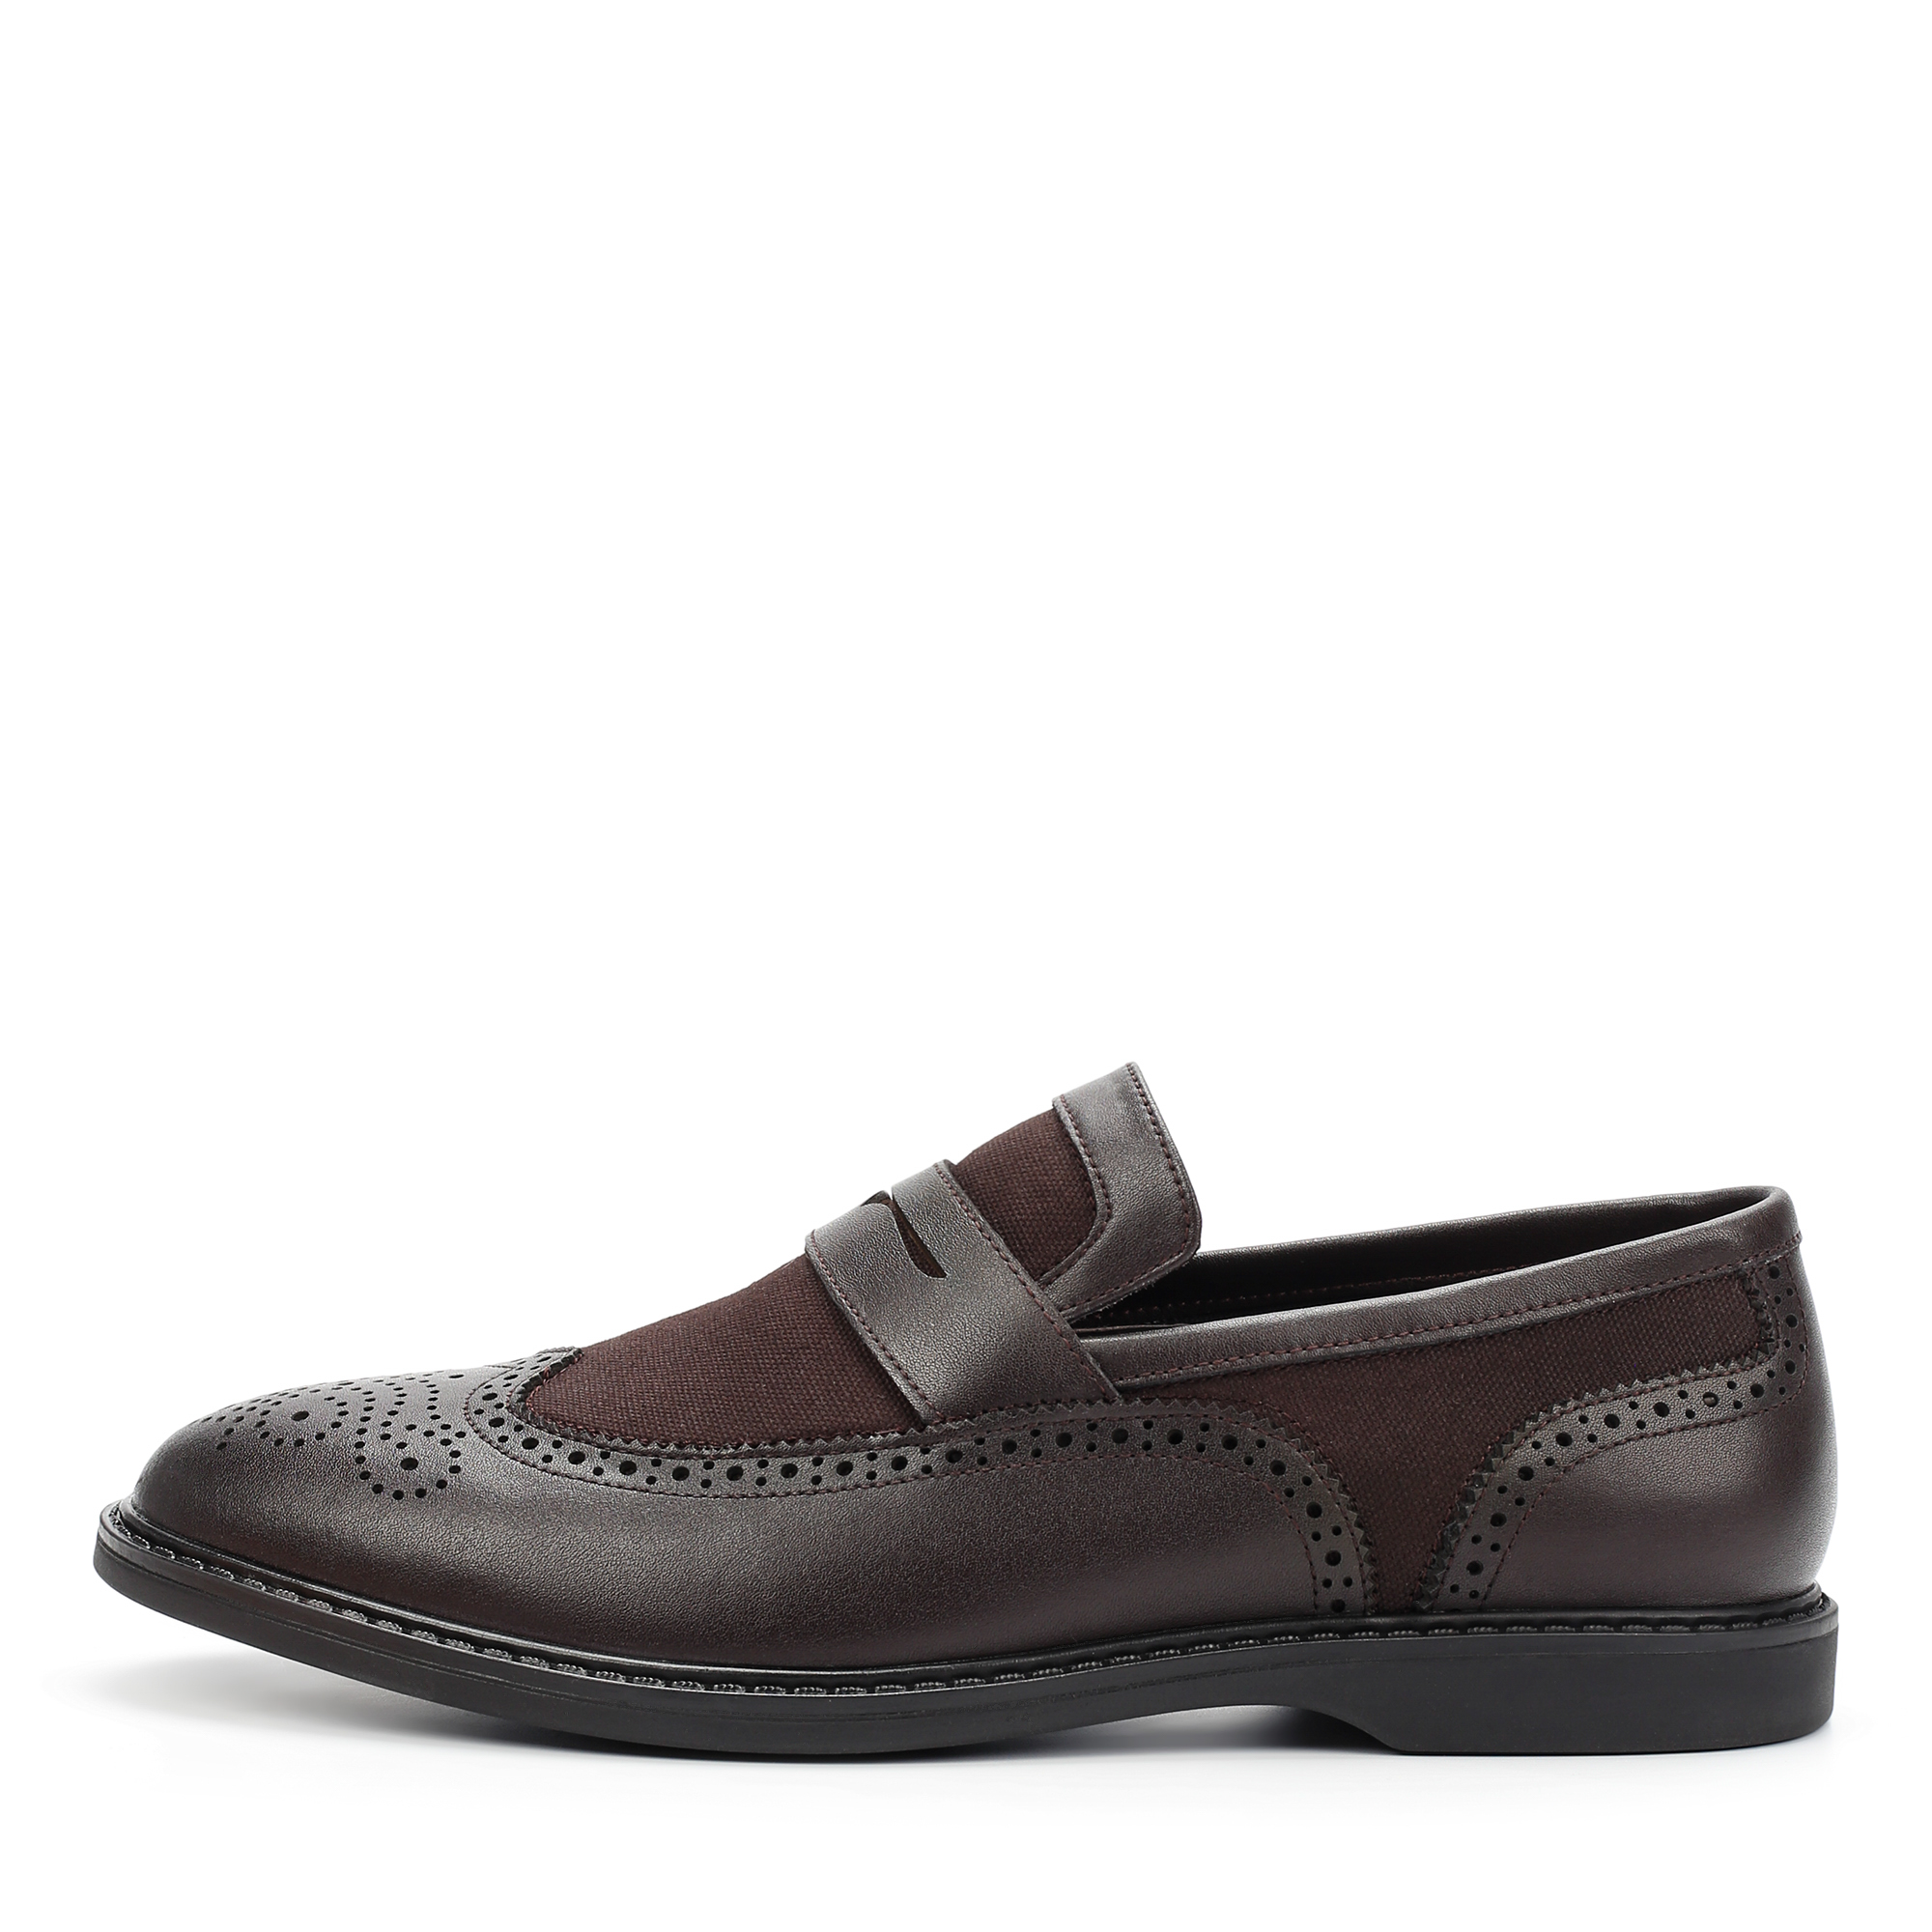 Туфли/полуботинки Thomas Munz 104-613A-1609, цвет коричневый, размер 41